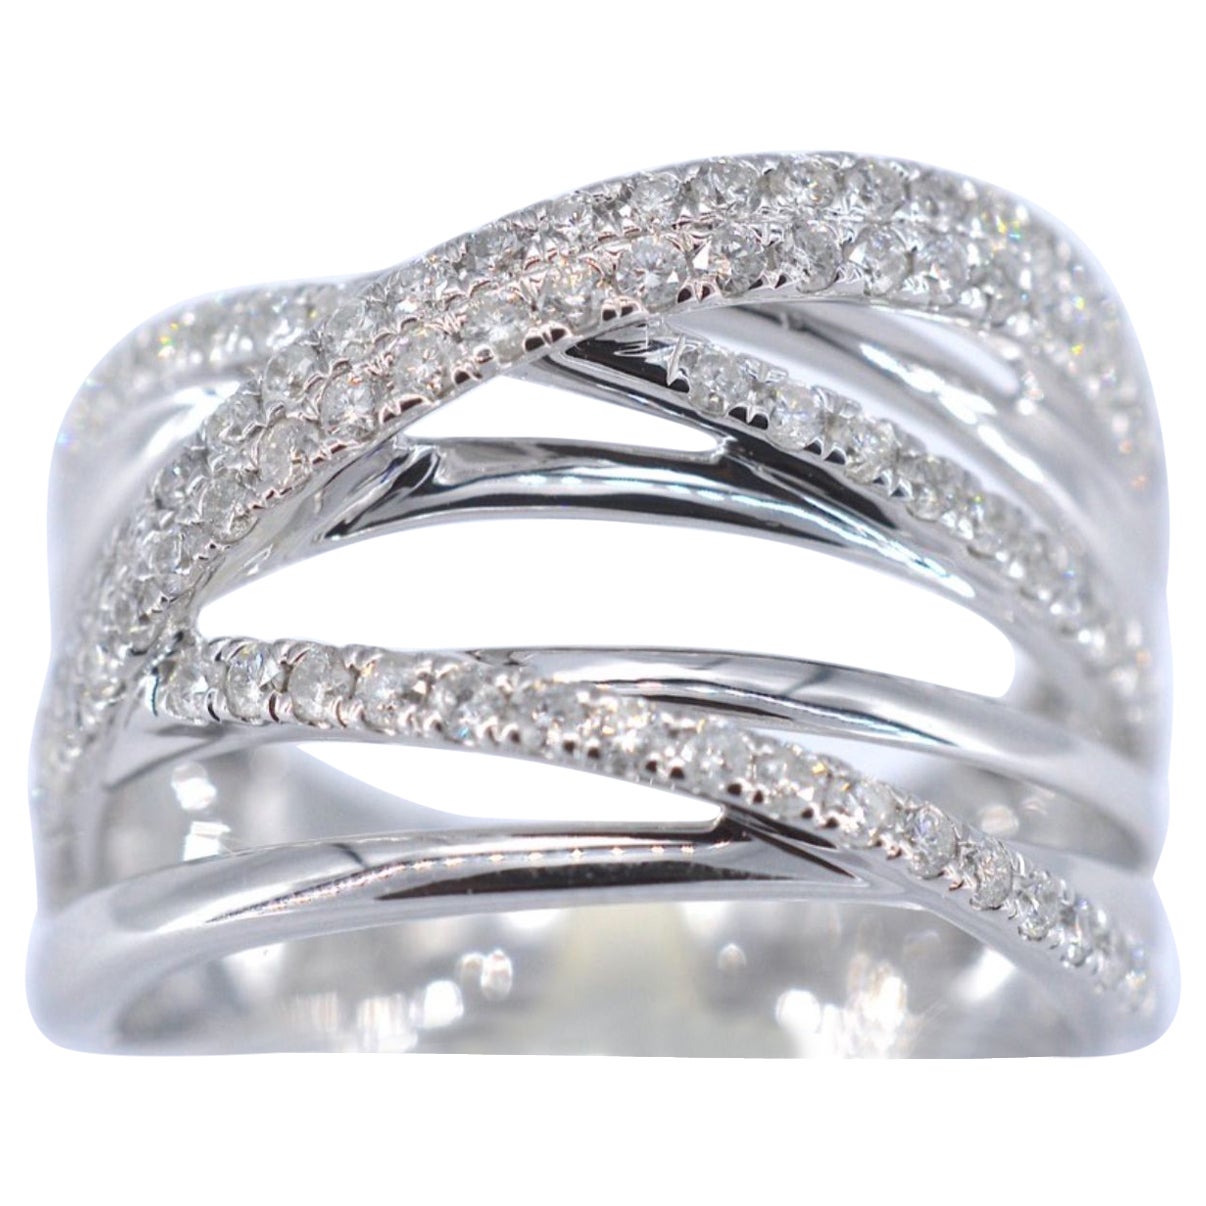 White Gold Design Ring with Brilliant Diamonds